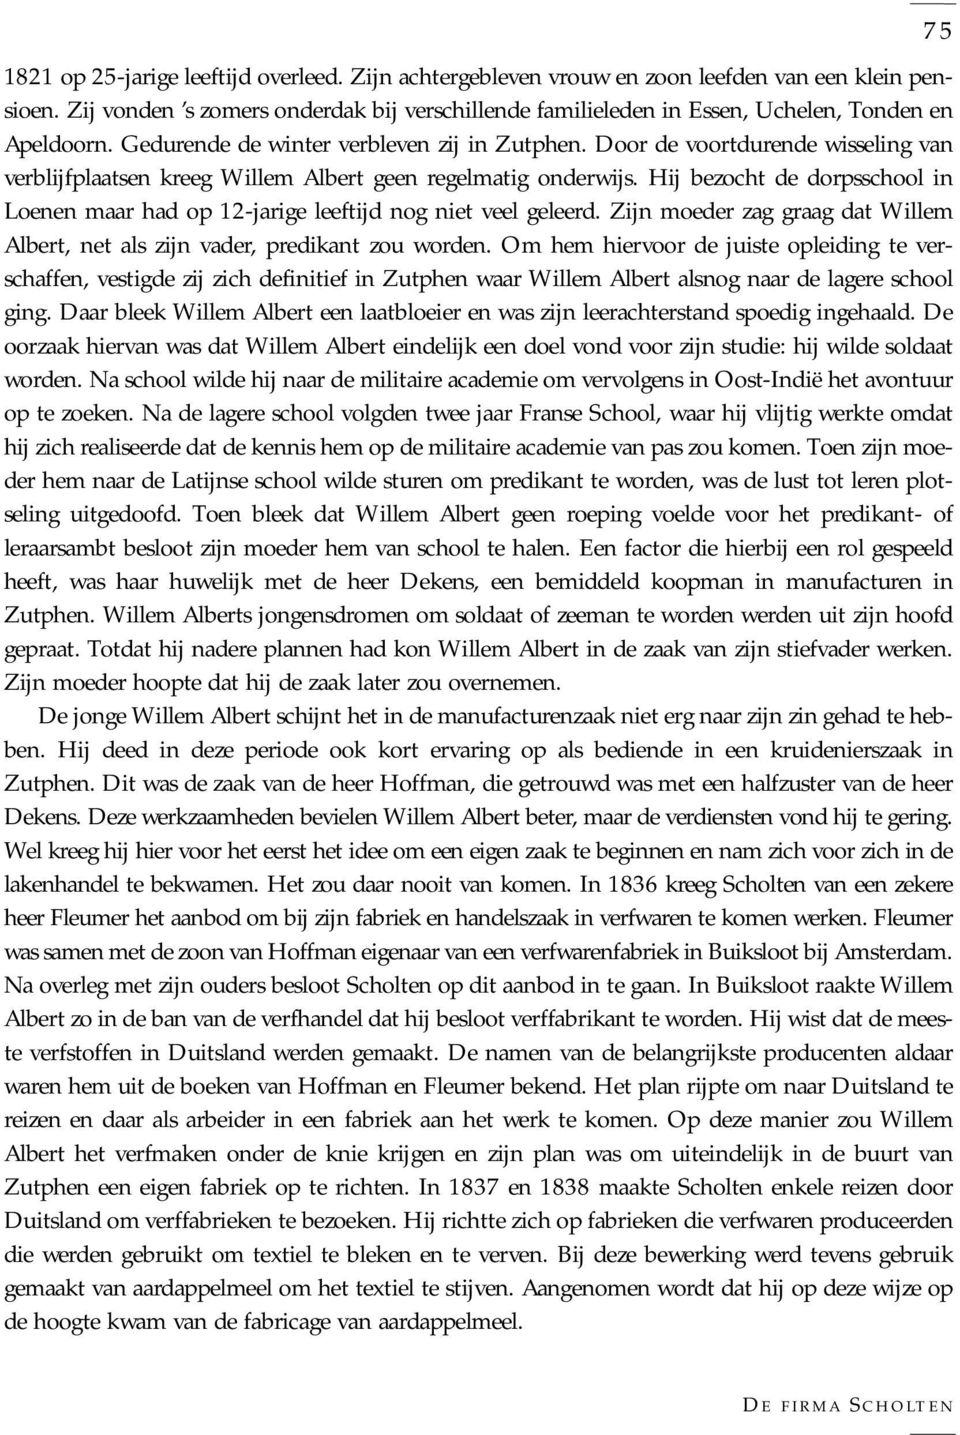 Door de voortdurende wisseling van verblijfplaatsen kreeg Willem Albert geen regelmatig onderwijs. Hij bezocht de dorpsschool in Loenen maar had op 12-jarige leeftijd nog niet veel geleerd.